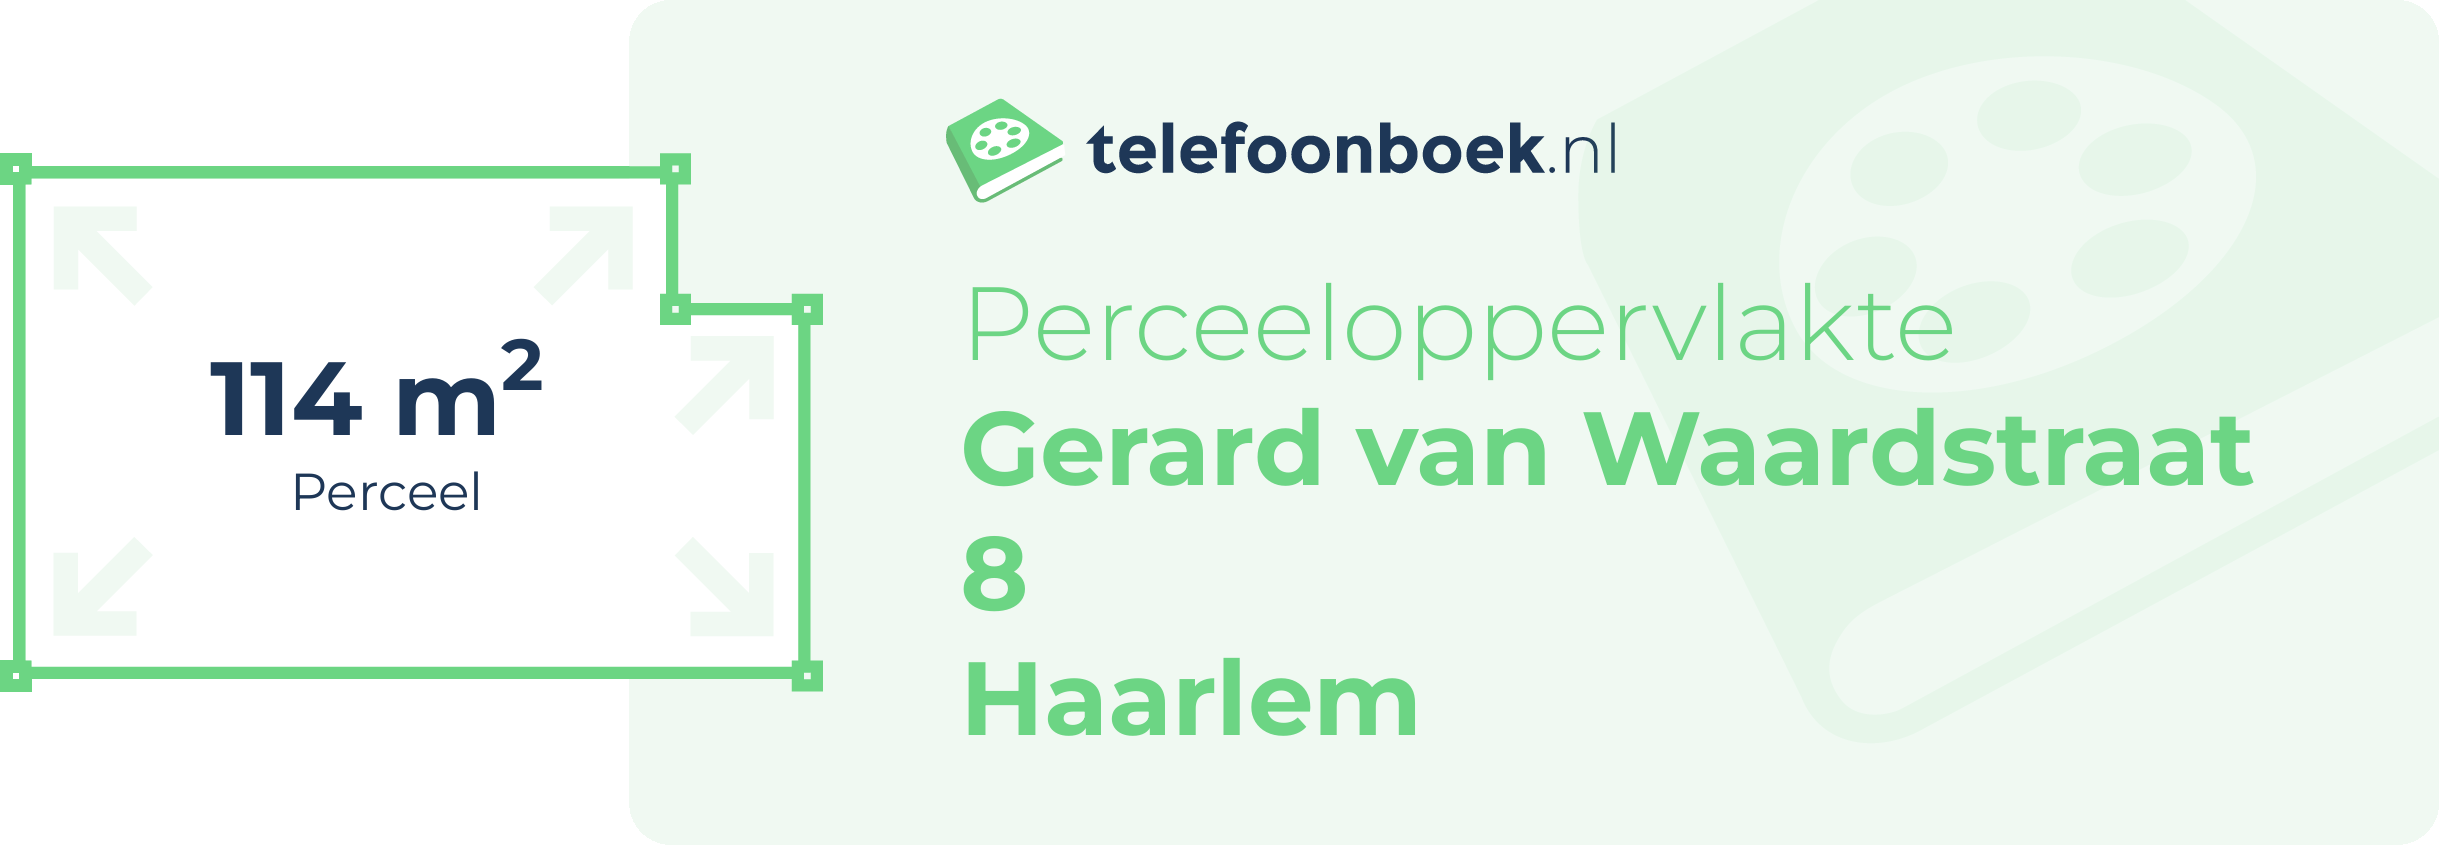 Perceeloppervlakte Gerard Van Waardstraat 8 Haarlem